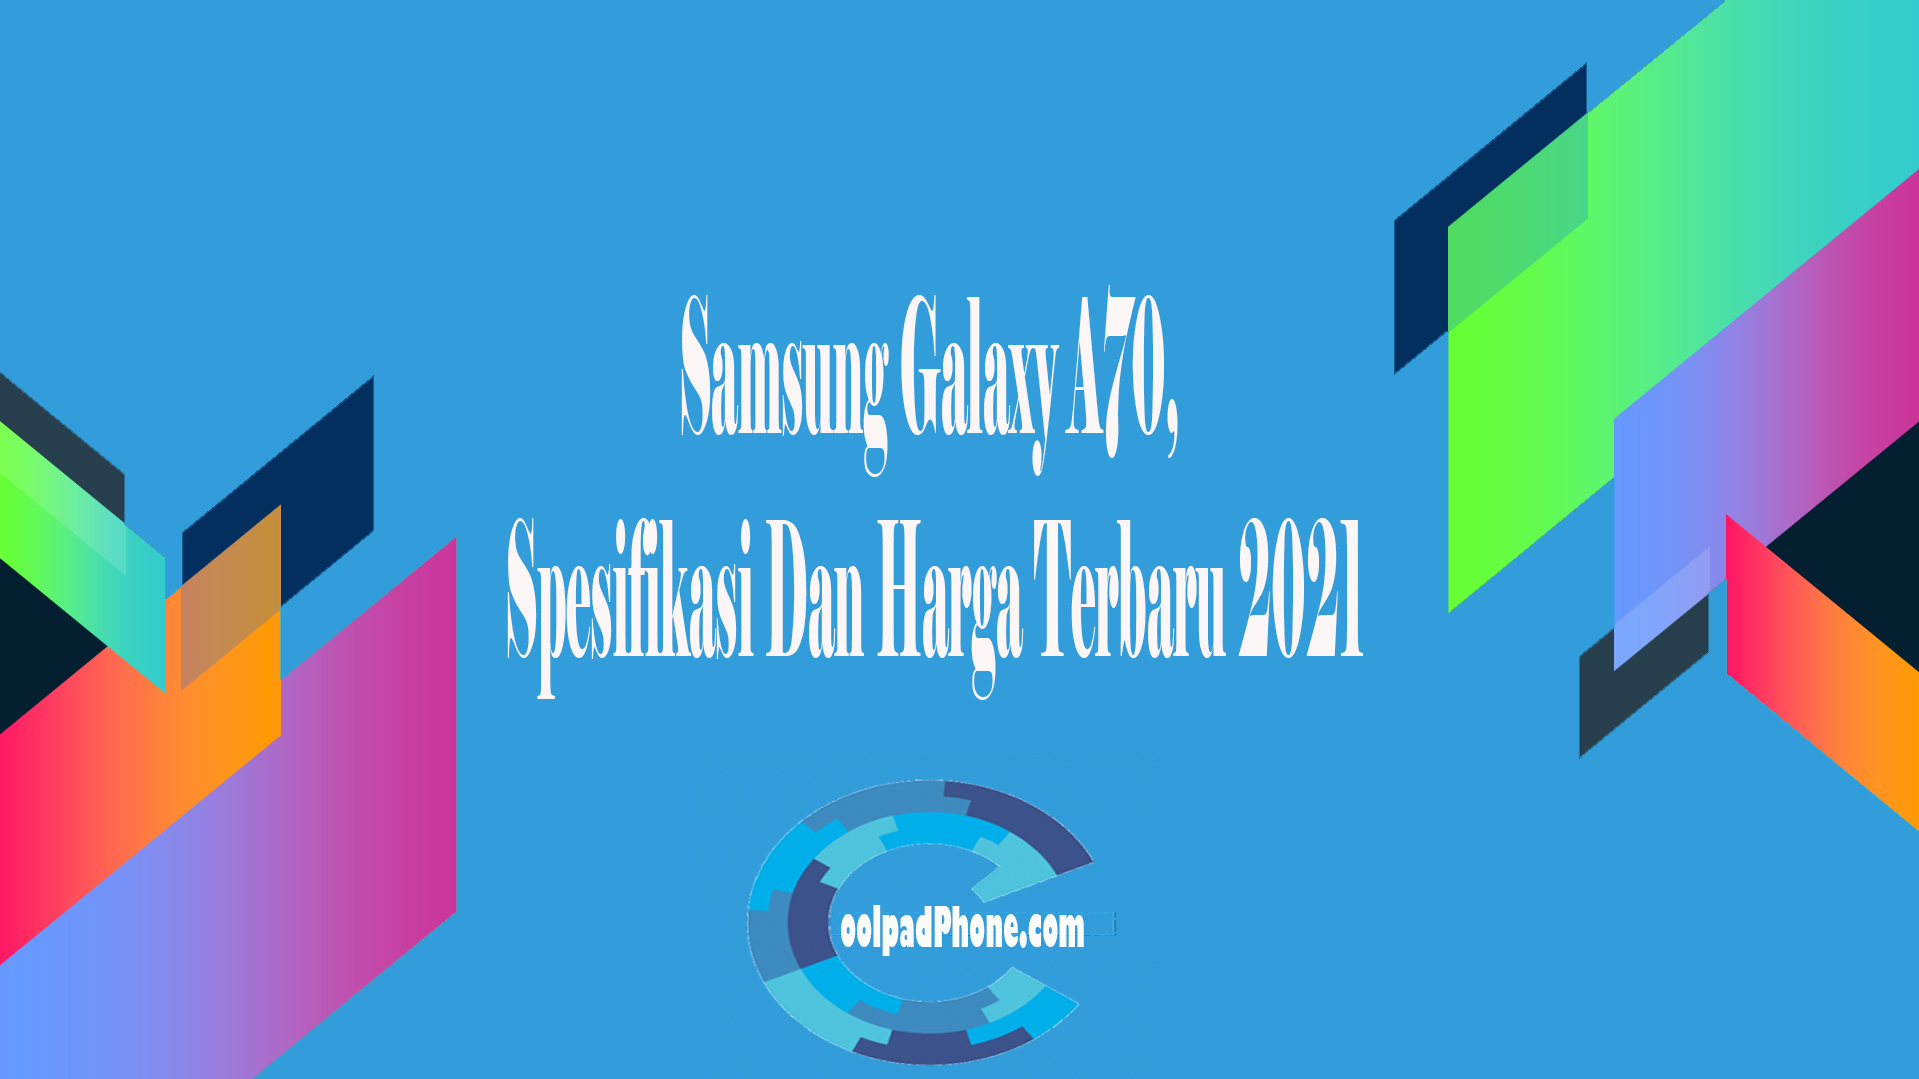 Samsung Galaxy A70, Spesifikasi Dan Harga Terbaru 2021